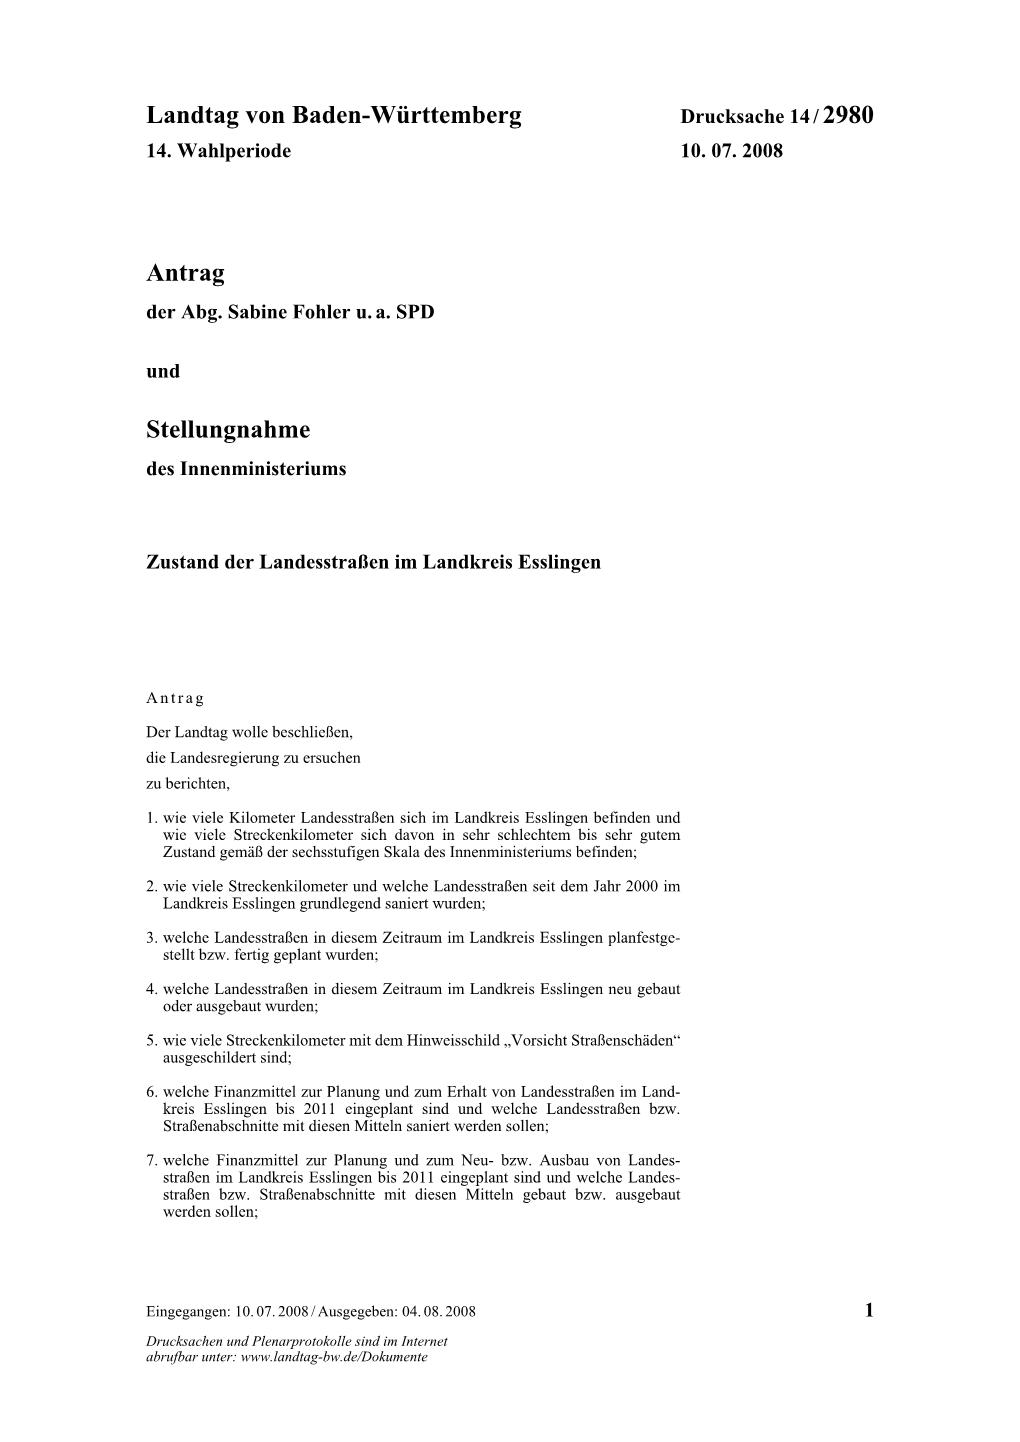 Landtag Von Baden-Württemberg Antrag Stellungnahme